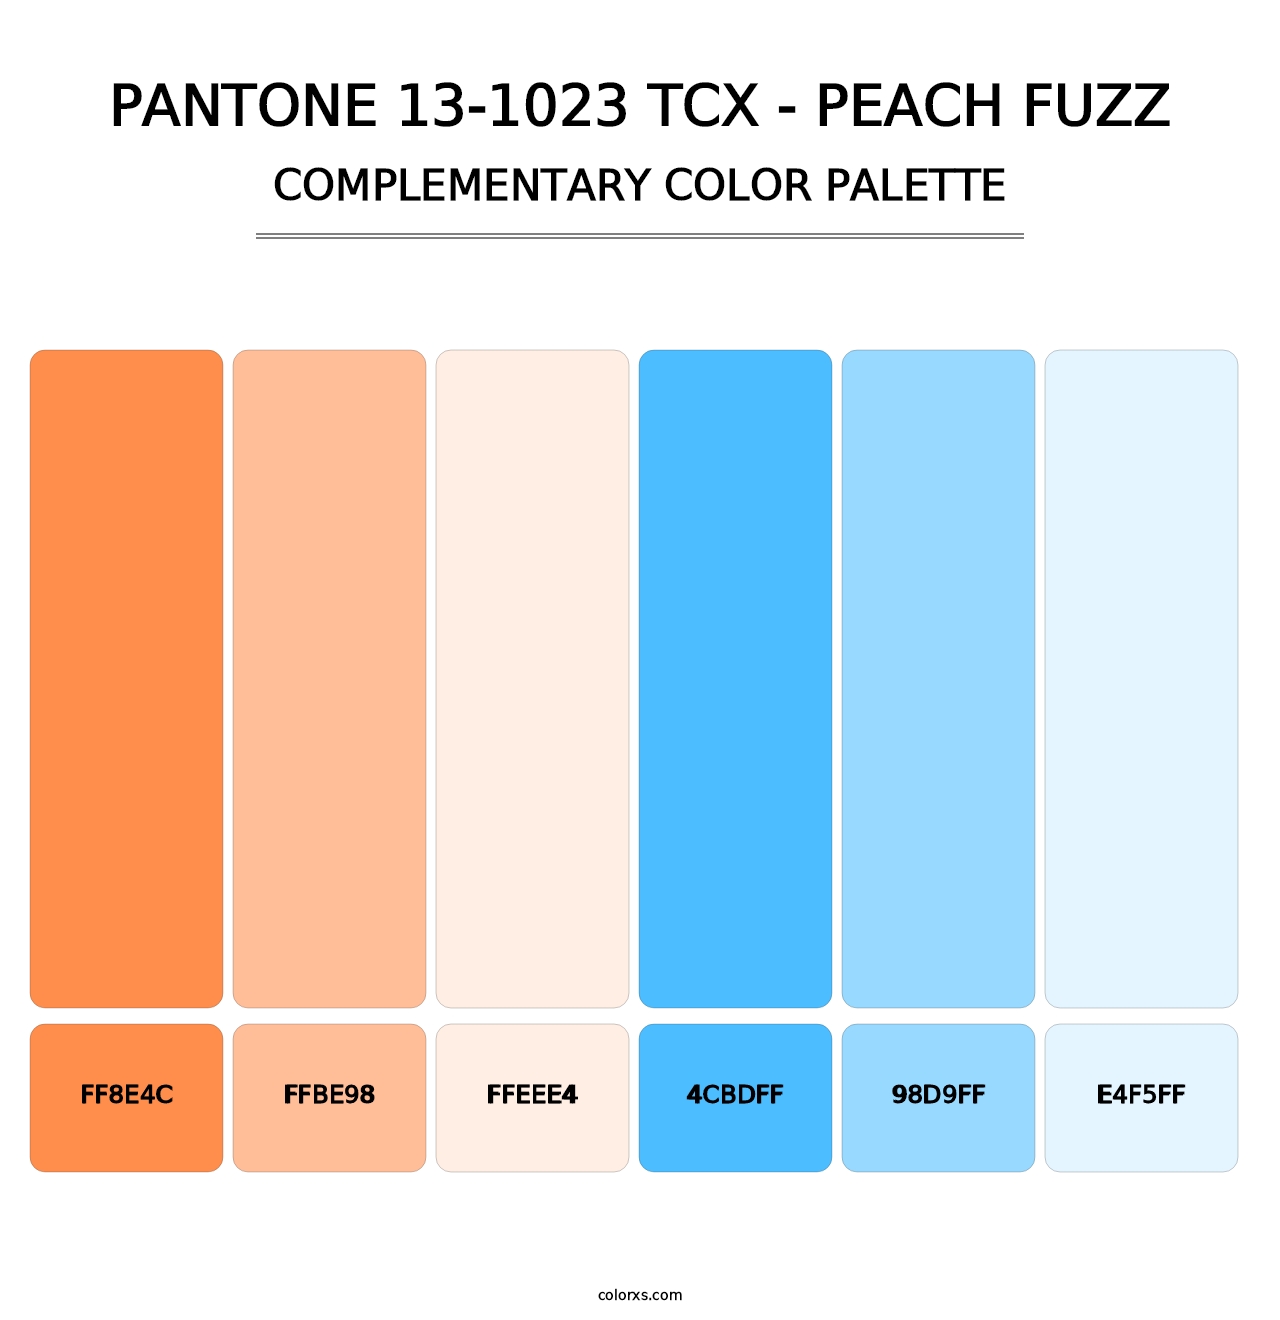 PANTONE 13-1023 TCX - Peach Fuzz - Complementary Color Palette